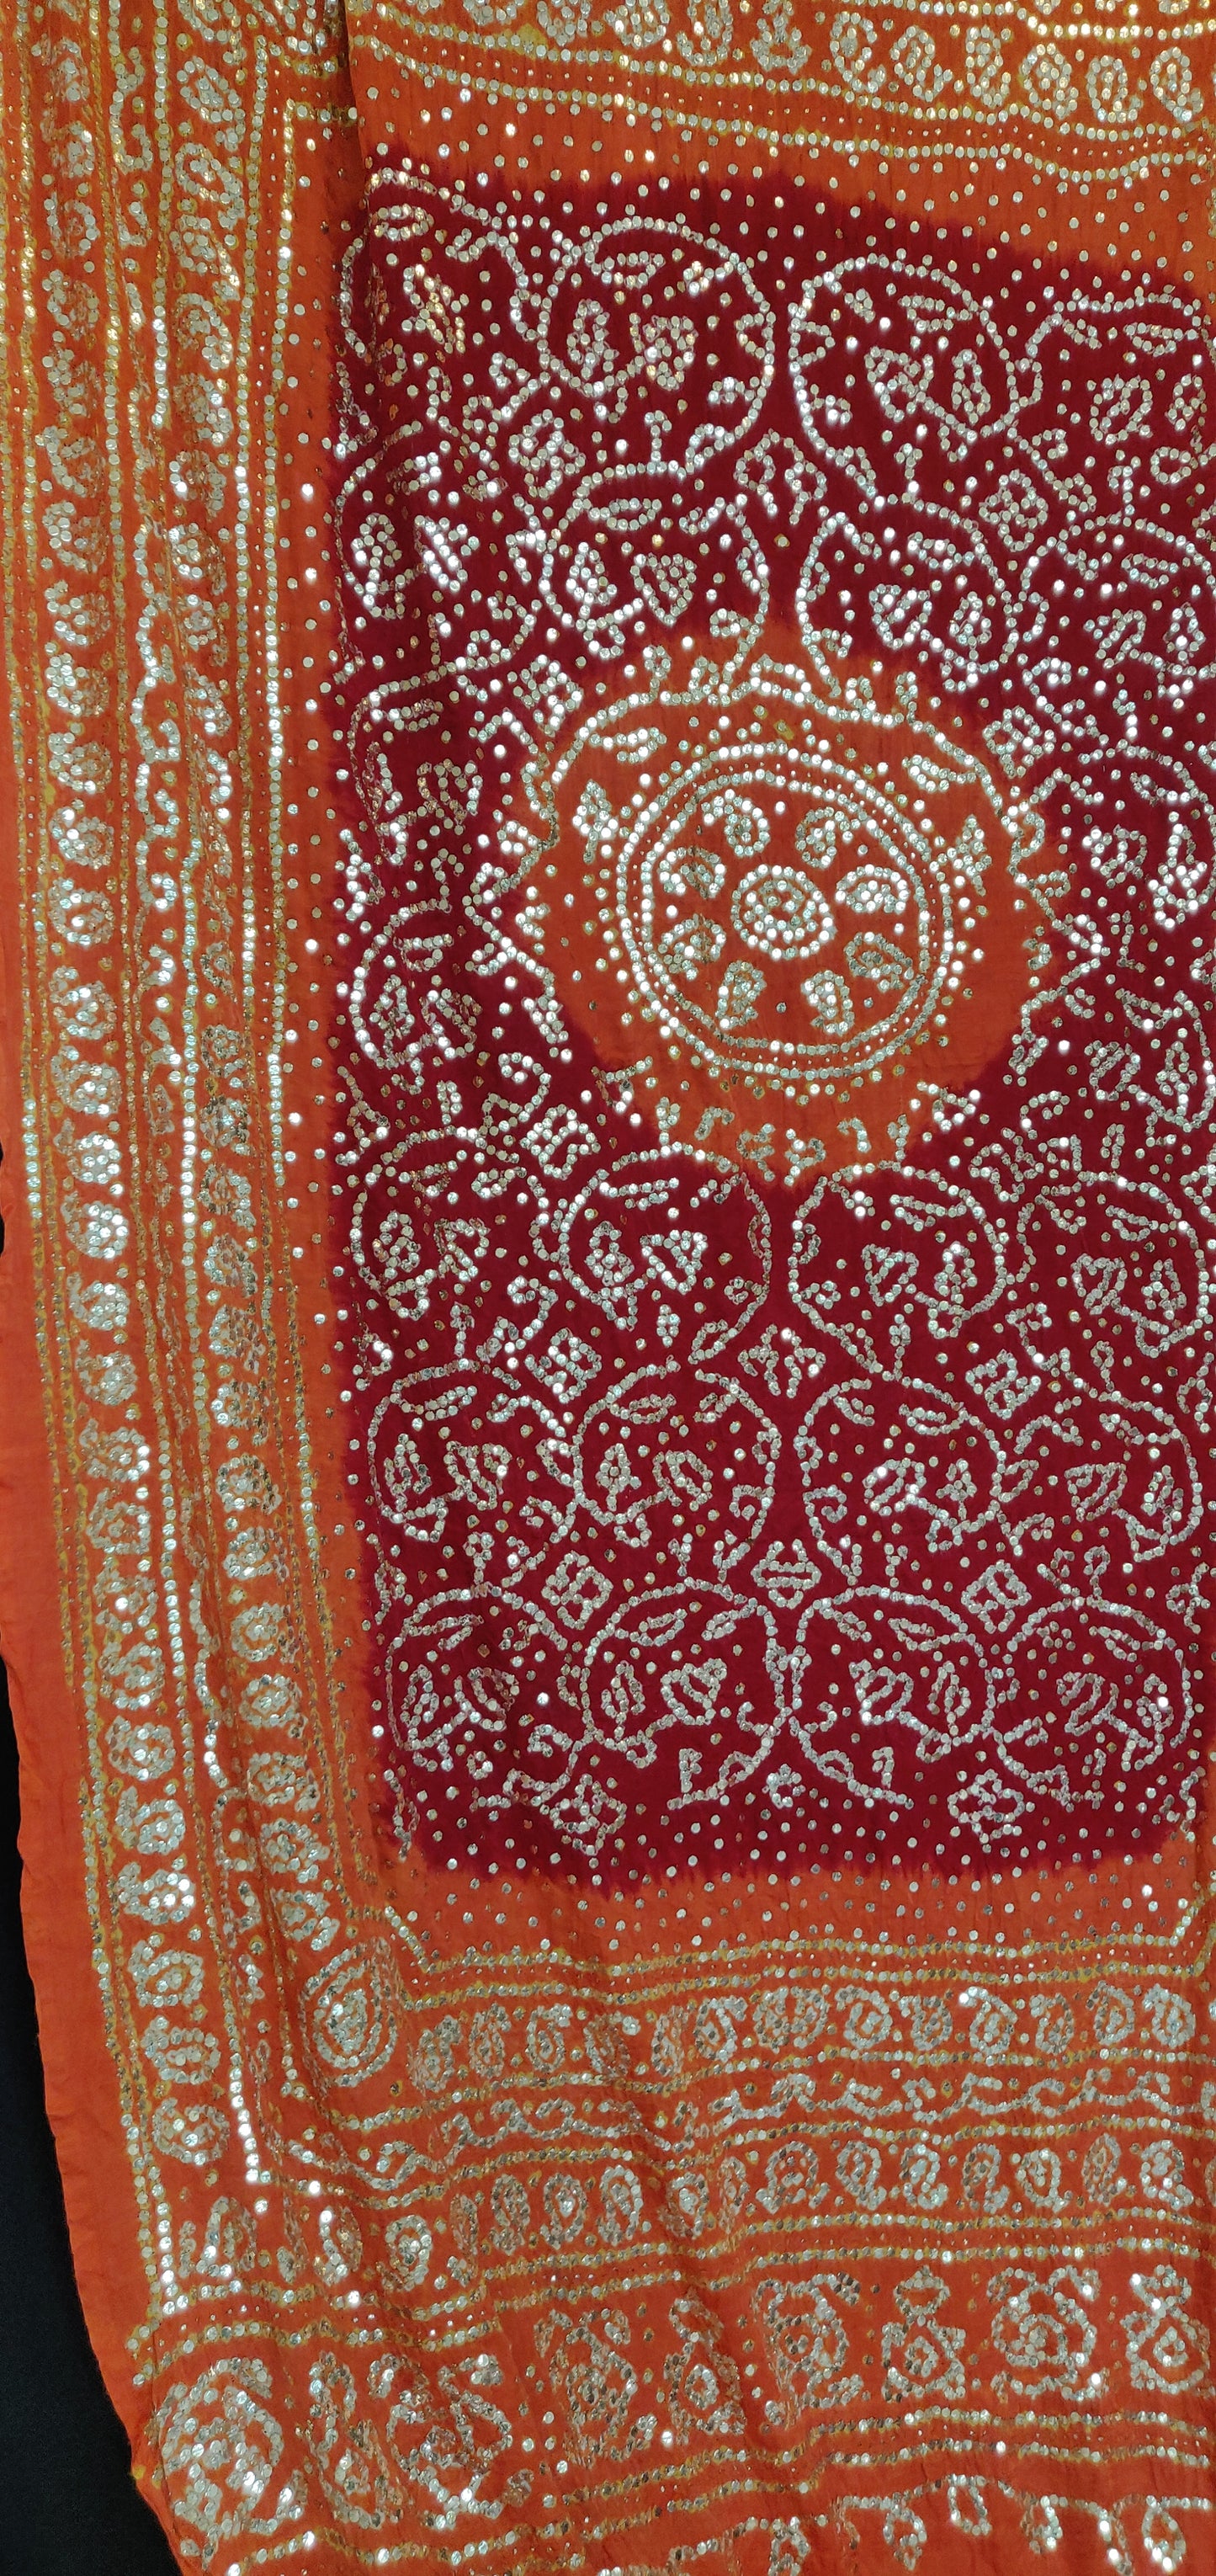 Orange and red gajji silk bandhej dupatta with very heavy mukaish work